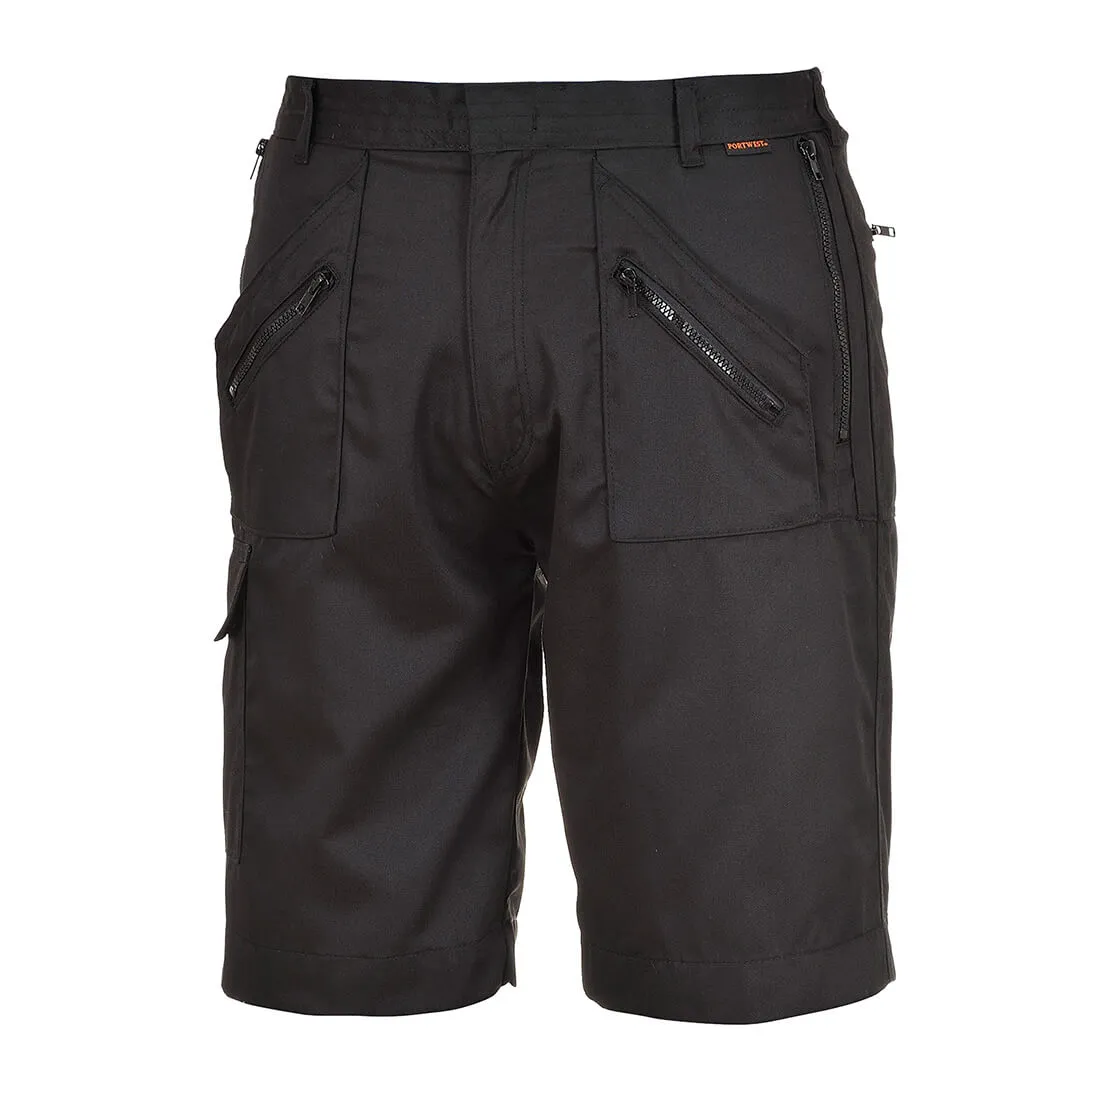 Portwest S889 Action Shorts - Black, XL